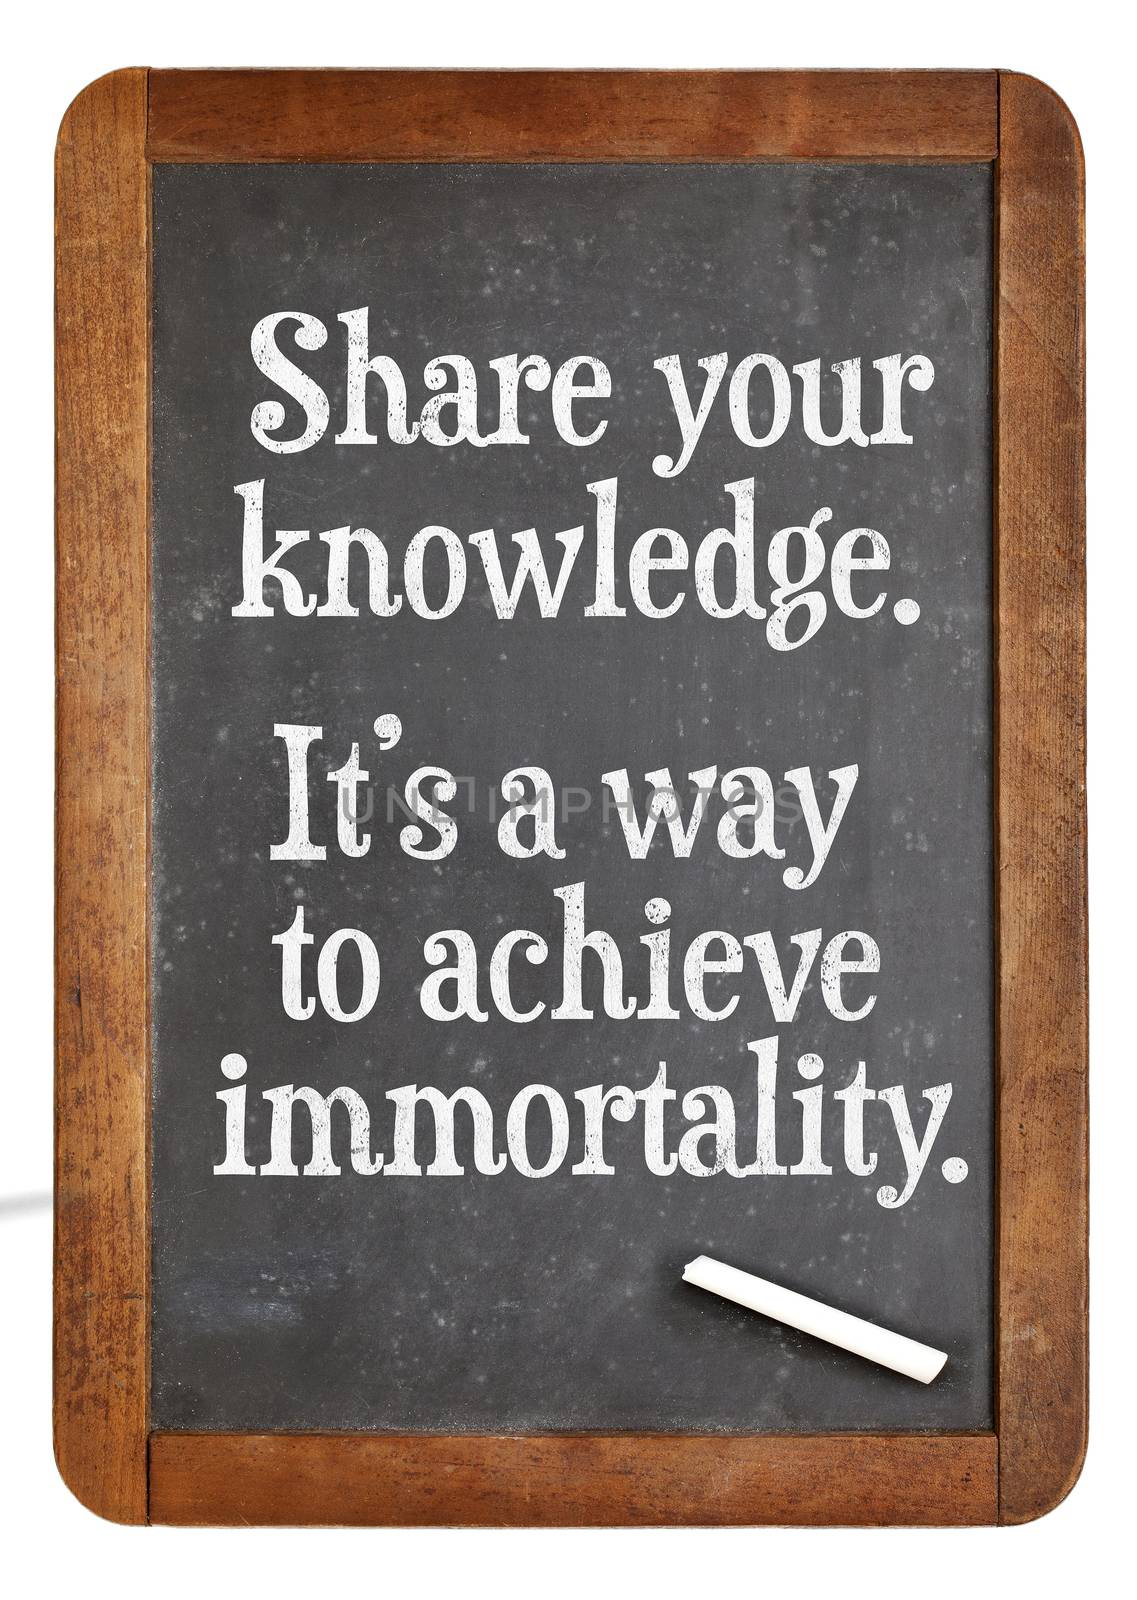 Share knowledge advice on blackboard by PixelsAway